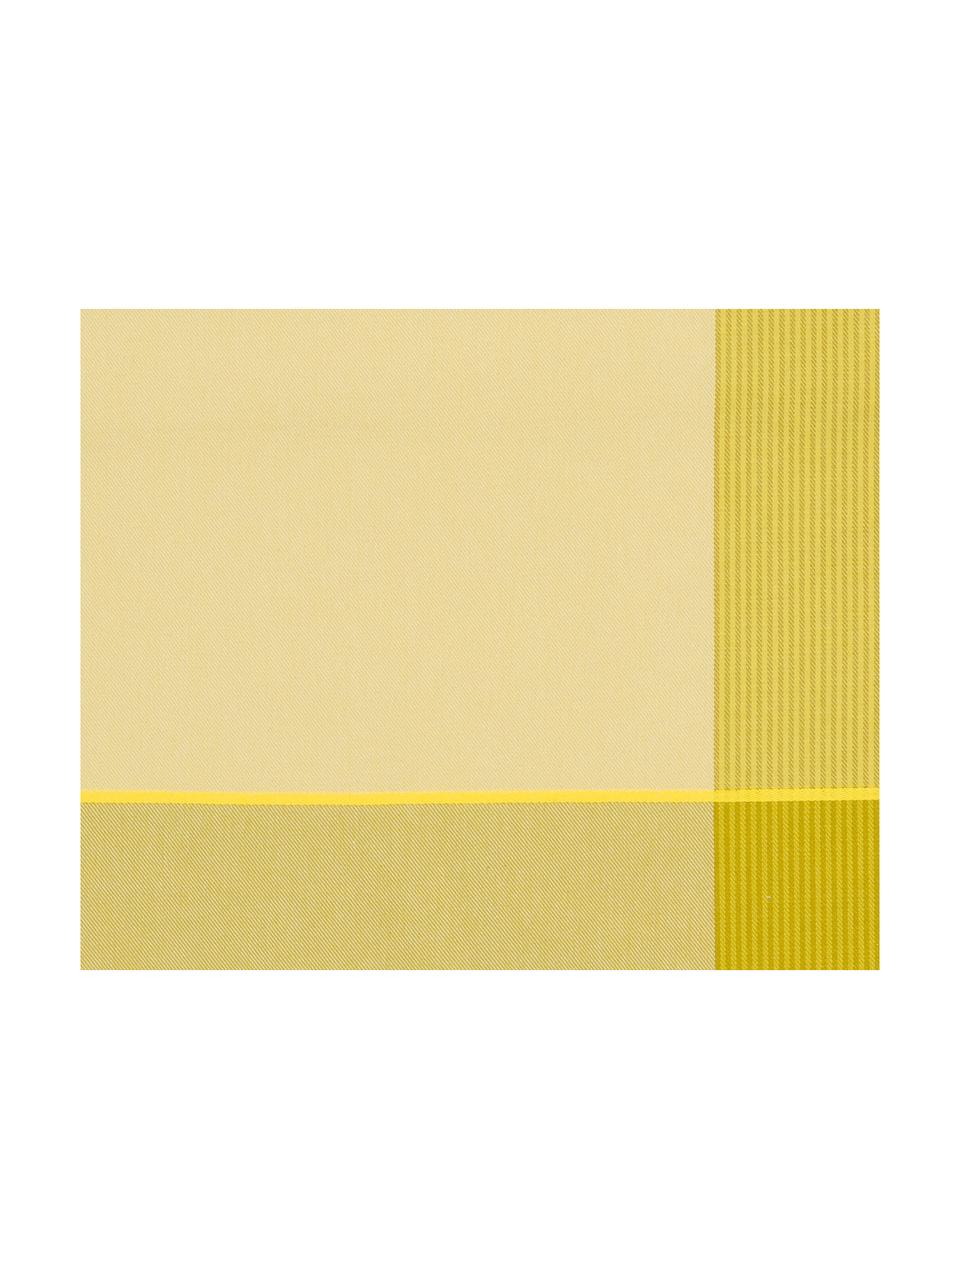 Baumwoll-Geschirrtücher Blend in Gelb , 6 Stück, Baumwolle, Gelbtöne, 60 x 65 cm